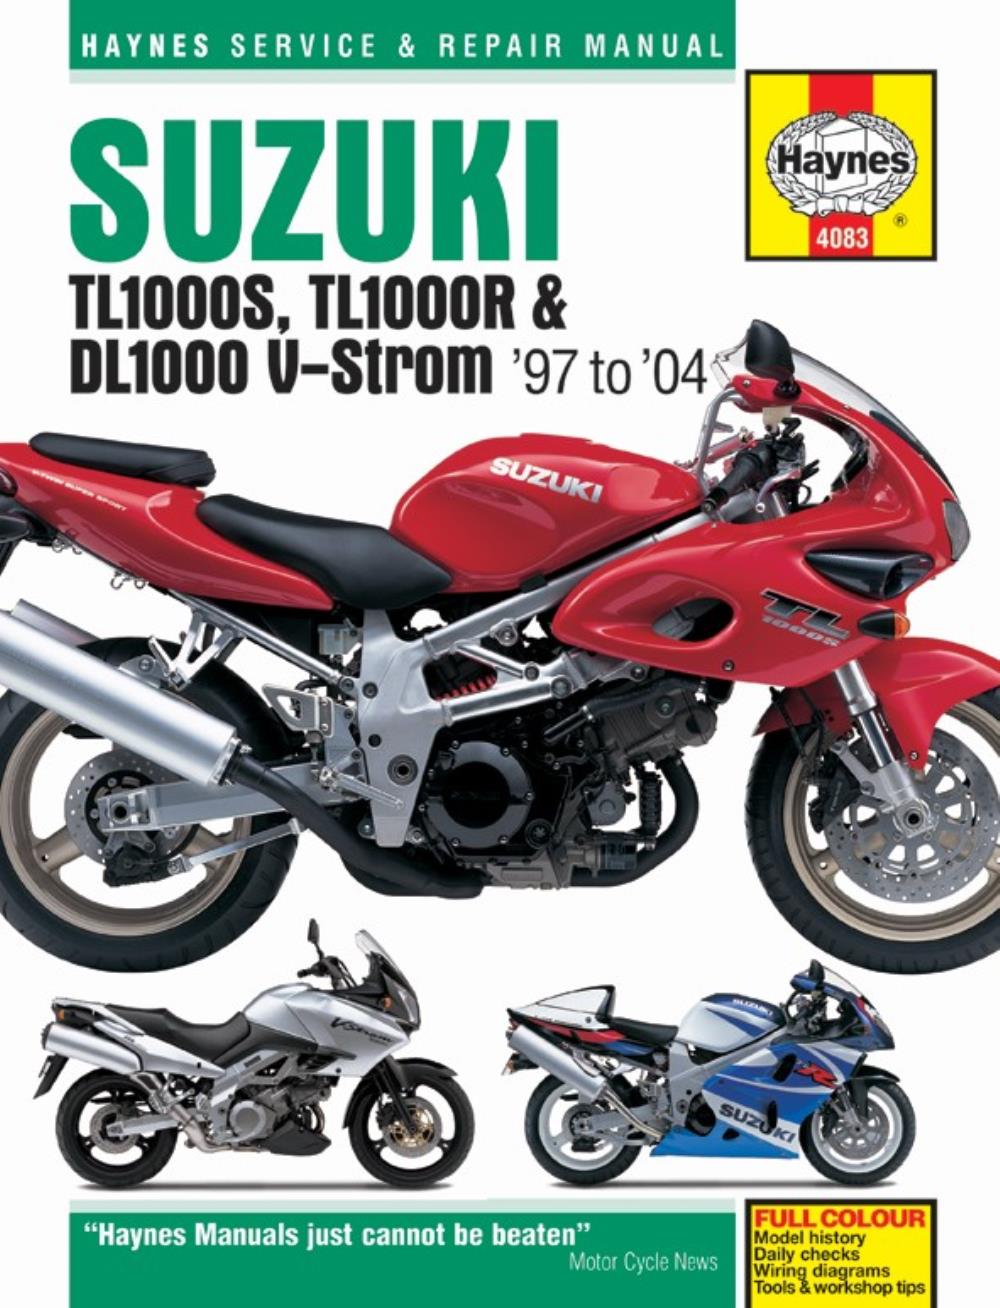 Мануалы и документация для Suzuki TL 1000 (TL1000S, TL1000R)